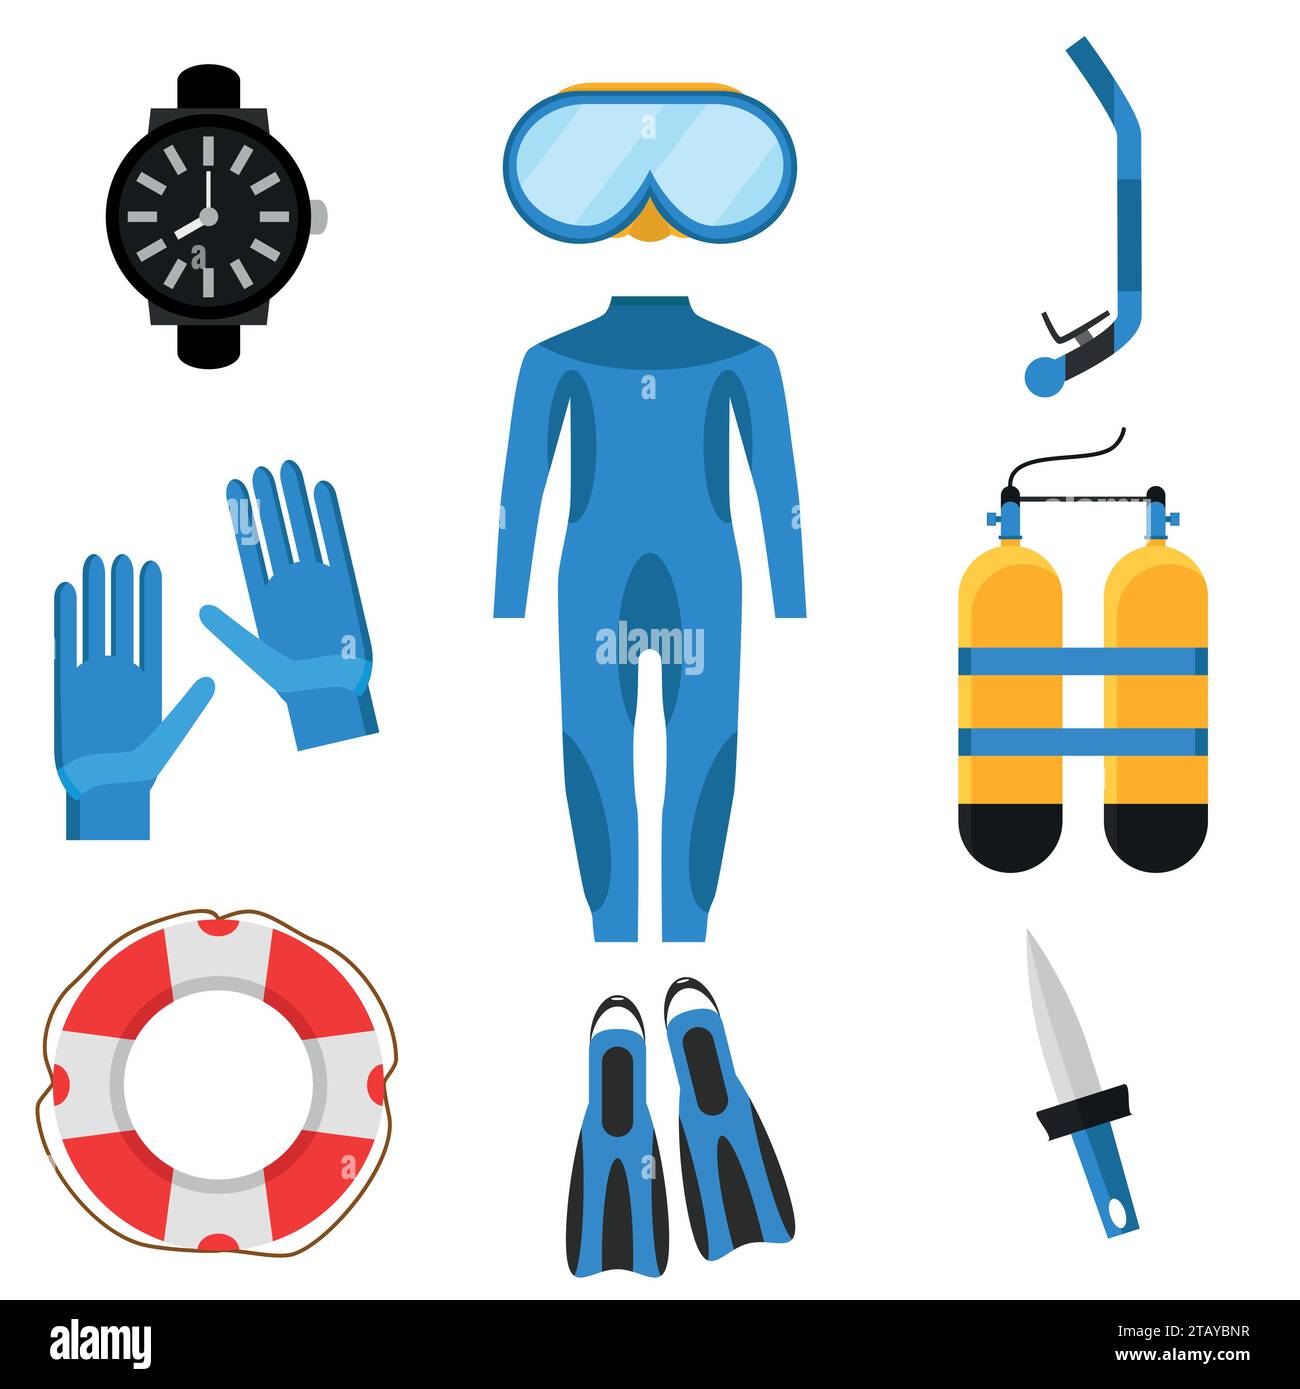 Collezione di immersioni subacquee. Muta subacquea, maschera subacquea, boccaglio, pinne, bombole di ossigeno, lifebuoy, icone flipper. Attrezzatura subacquea per immersioni subacquee Illustrazione Vettoriale